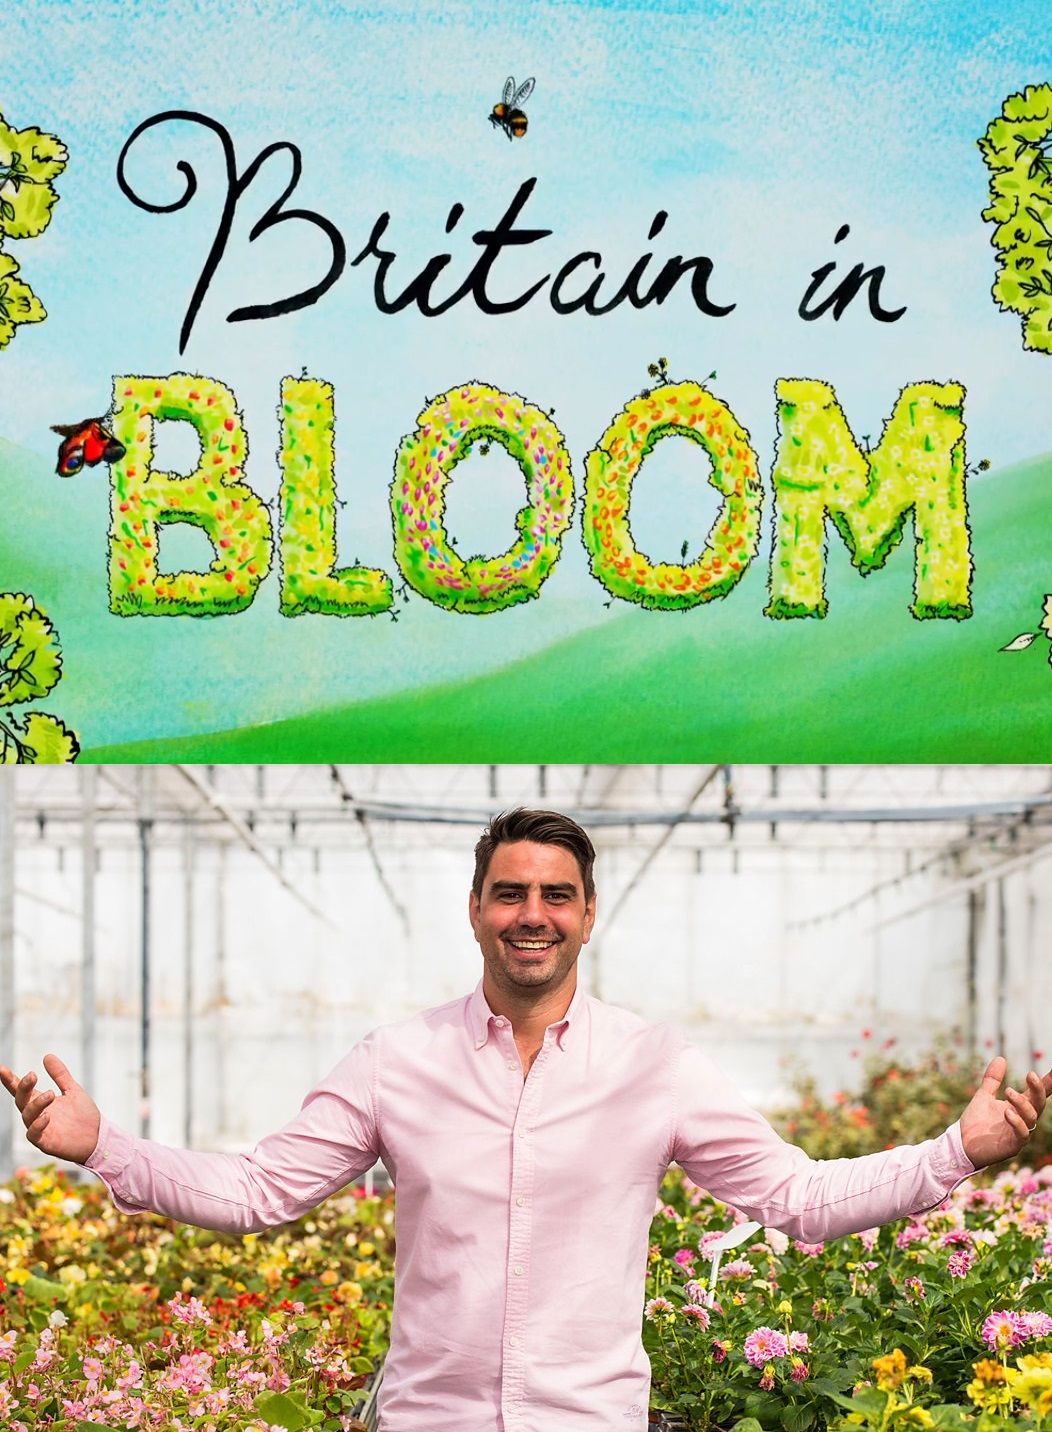 Britain in Bloom ne zaman